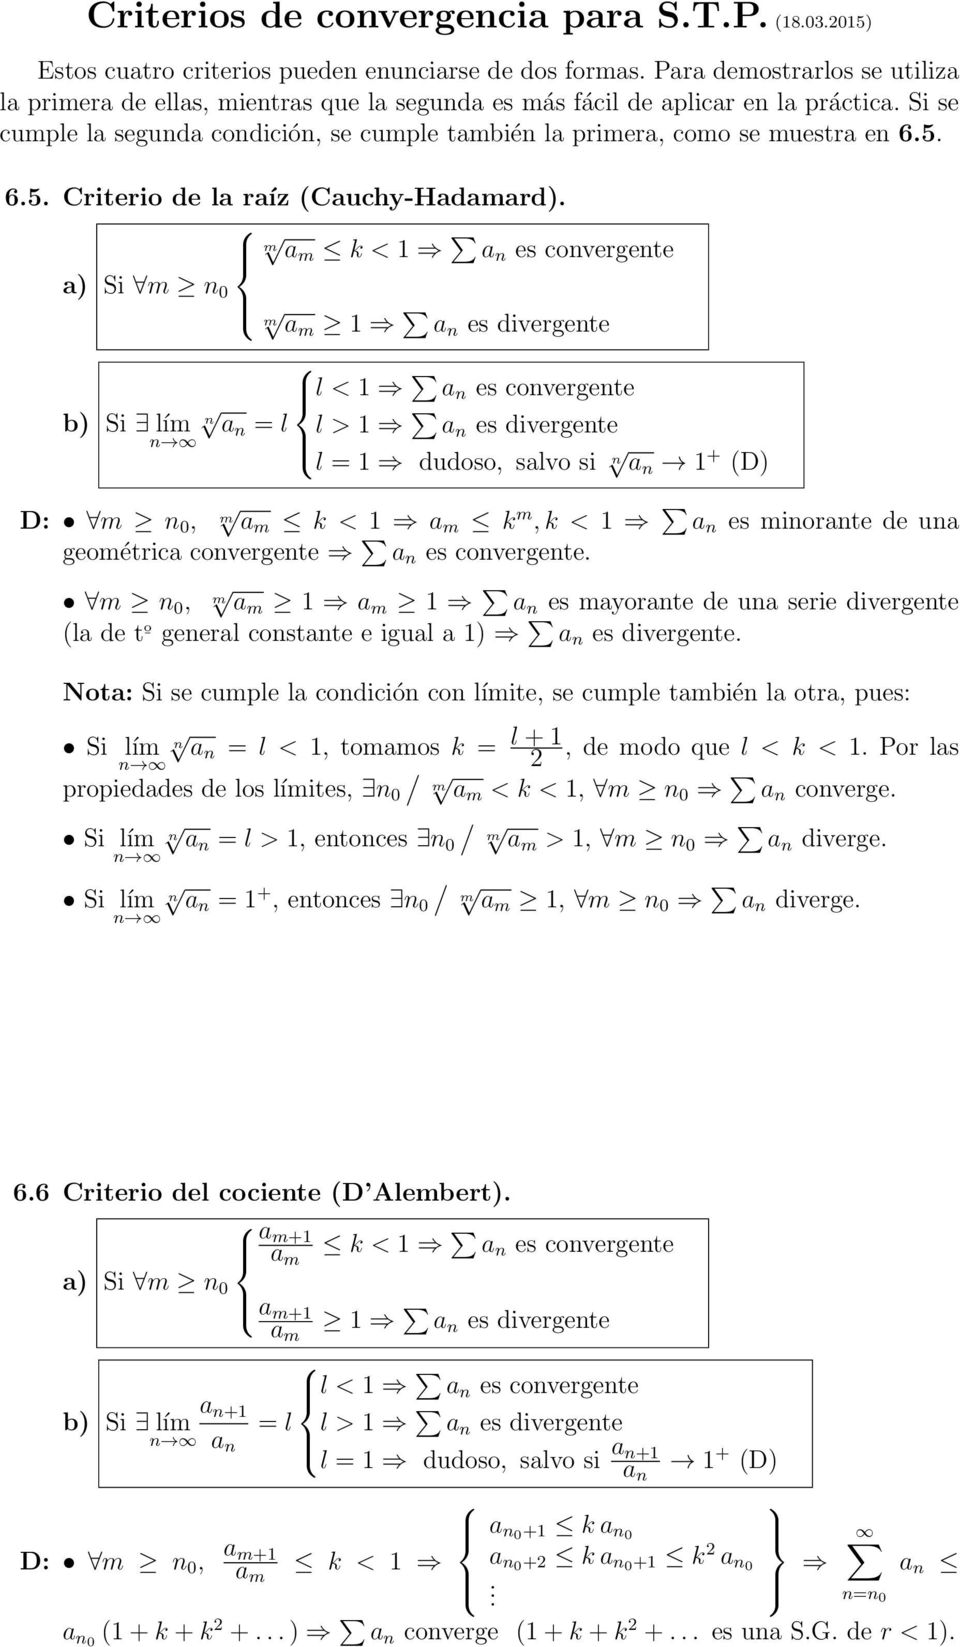 6.5. Criterio de la raíz Cauchy-Hadamard).